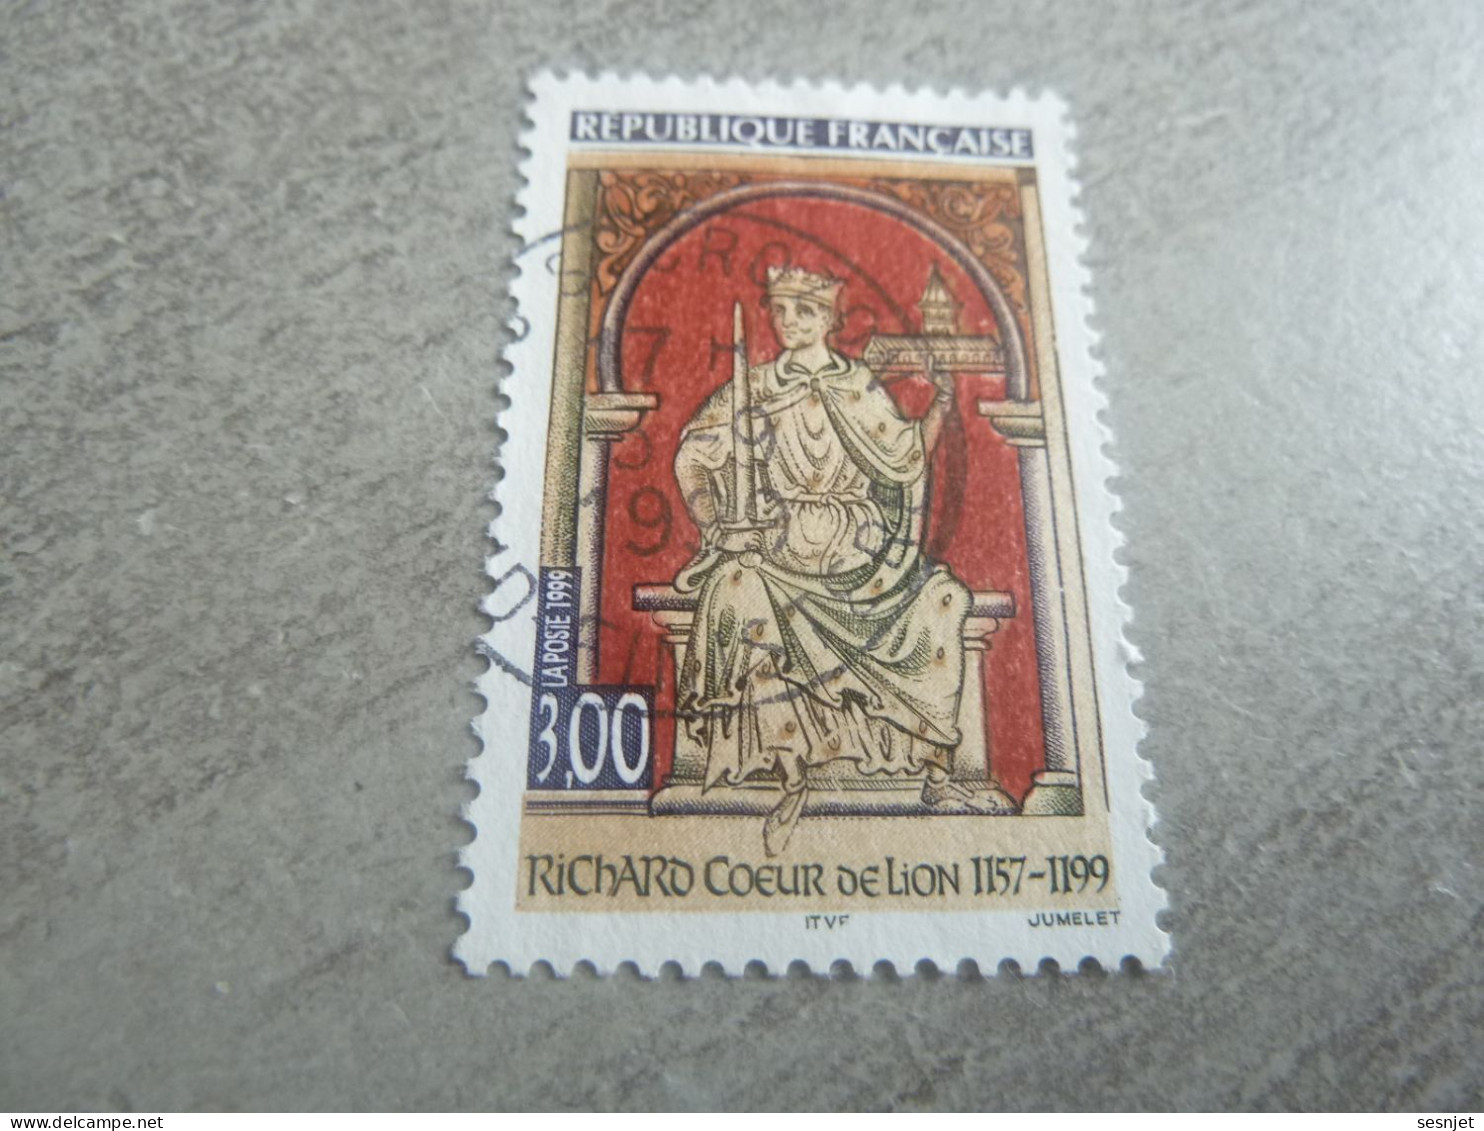 Richard Coeur De Lion (1157-1199) Roi - 3f. - Yt 3238 - Multicolore - Oblitéré - Année 1999 - - Oblitérés